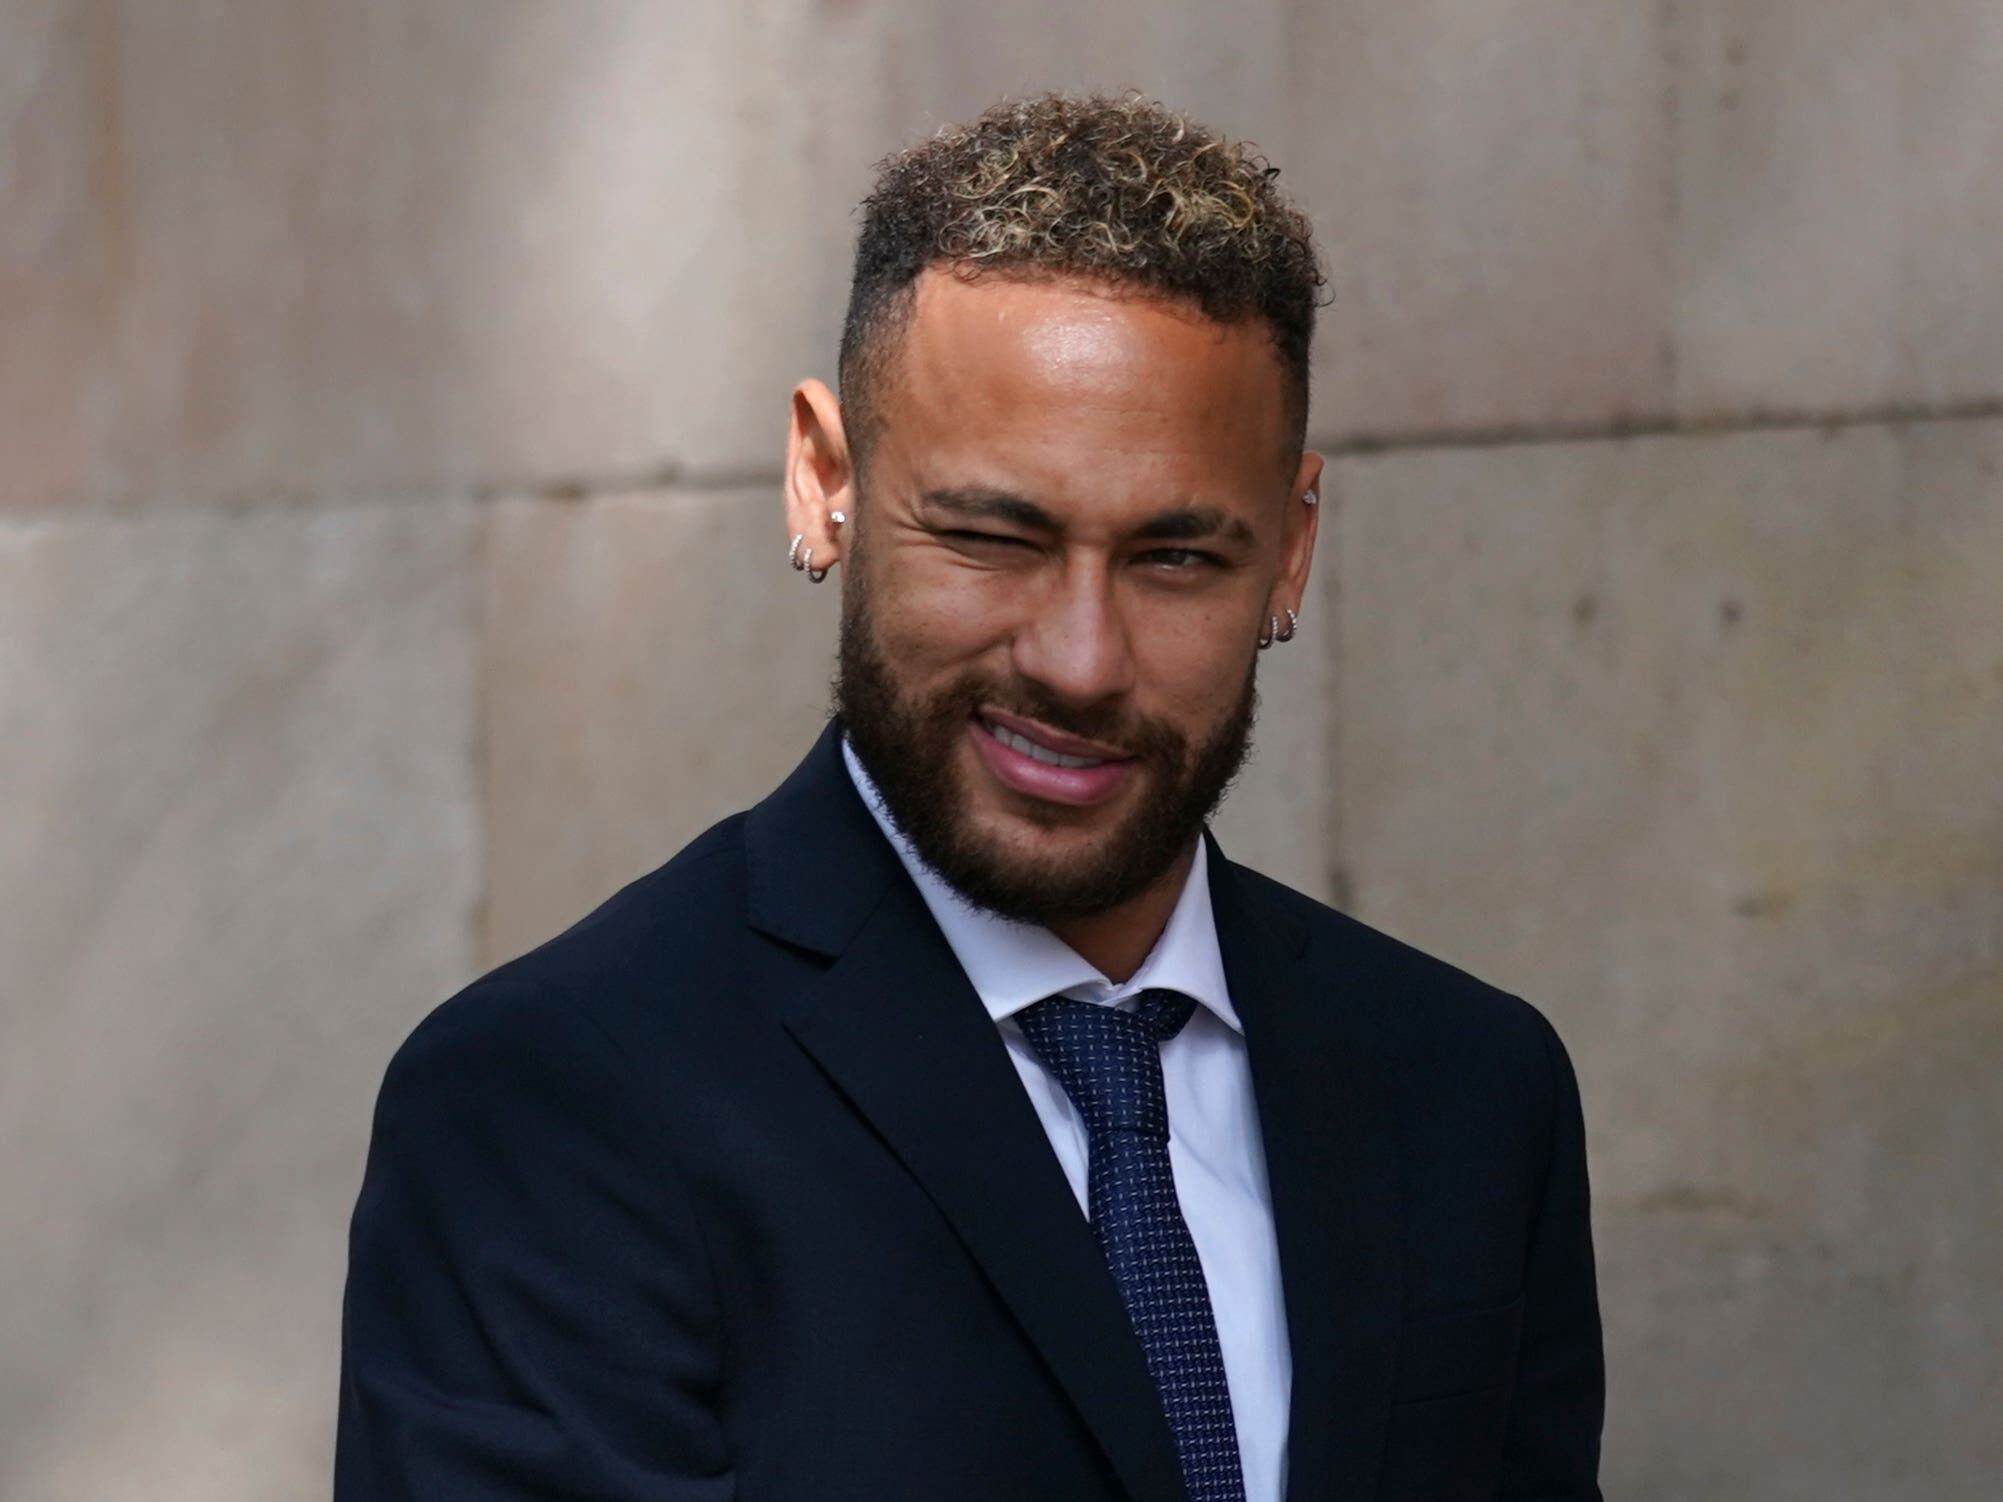 ‘My father handles everything’, Neymar tells fraud trial